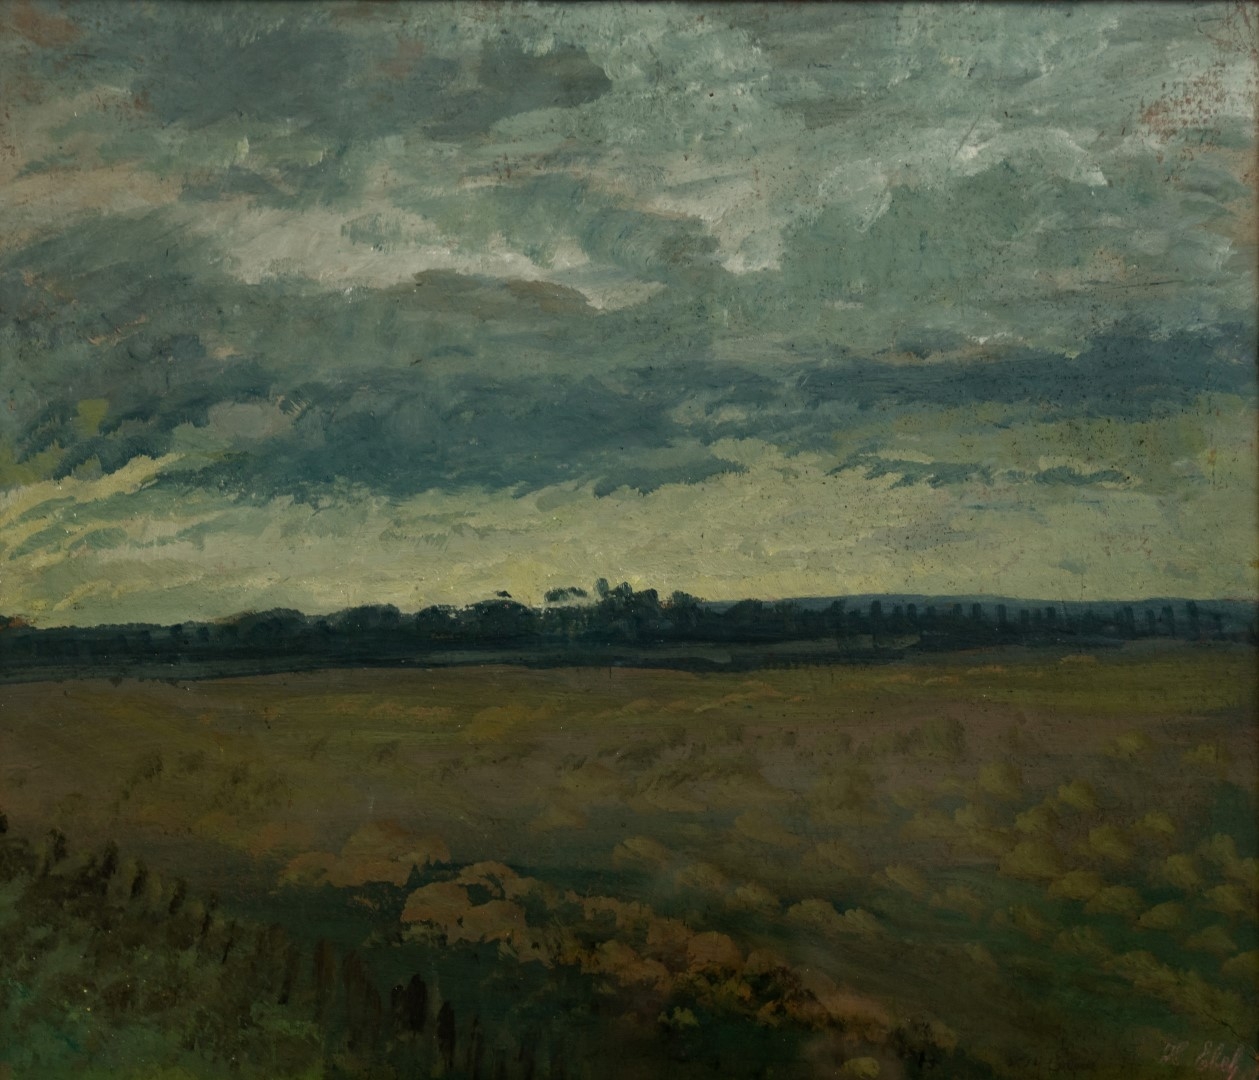 Paysage sous ciel de nuages, date illisible,  tempera sur carton, 38x45 cm, collection particulière.